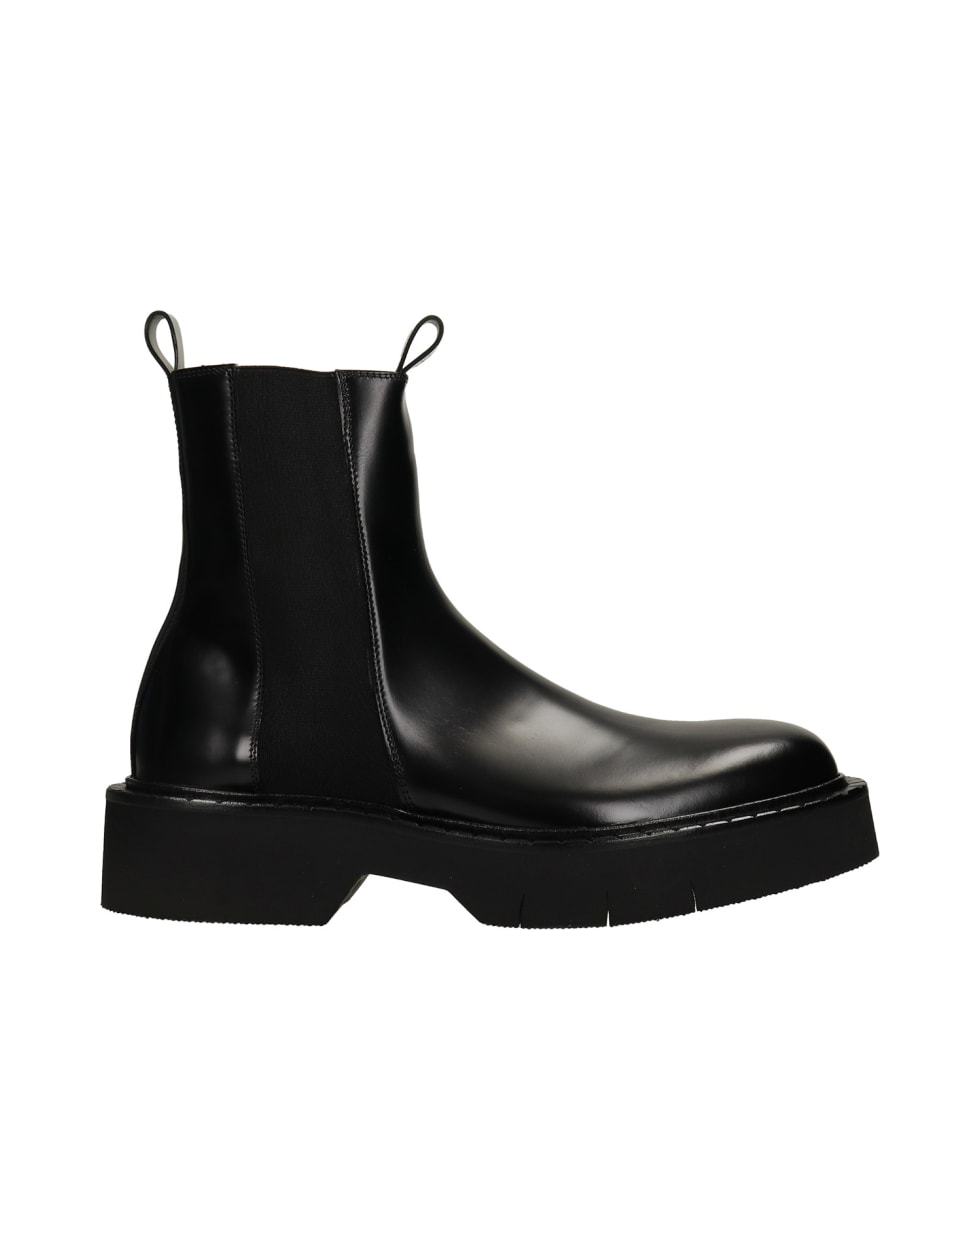 Cesare Paciotti Tronchetti Ankle Boots In Black Leather - black